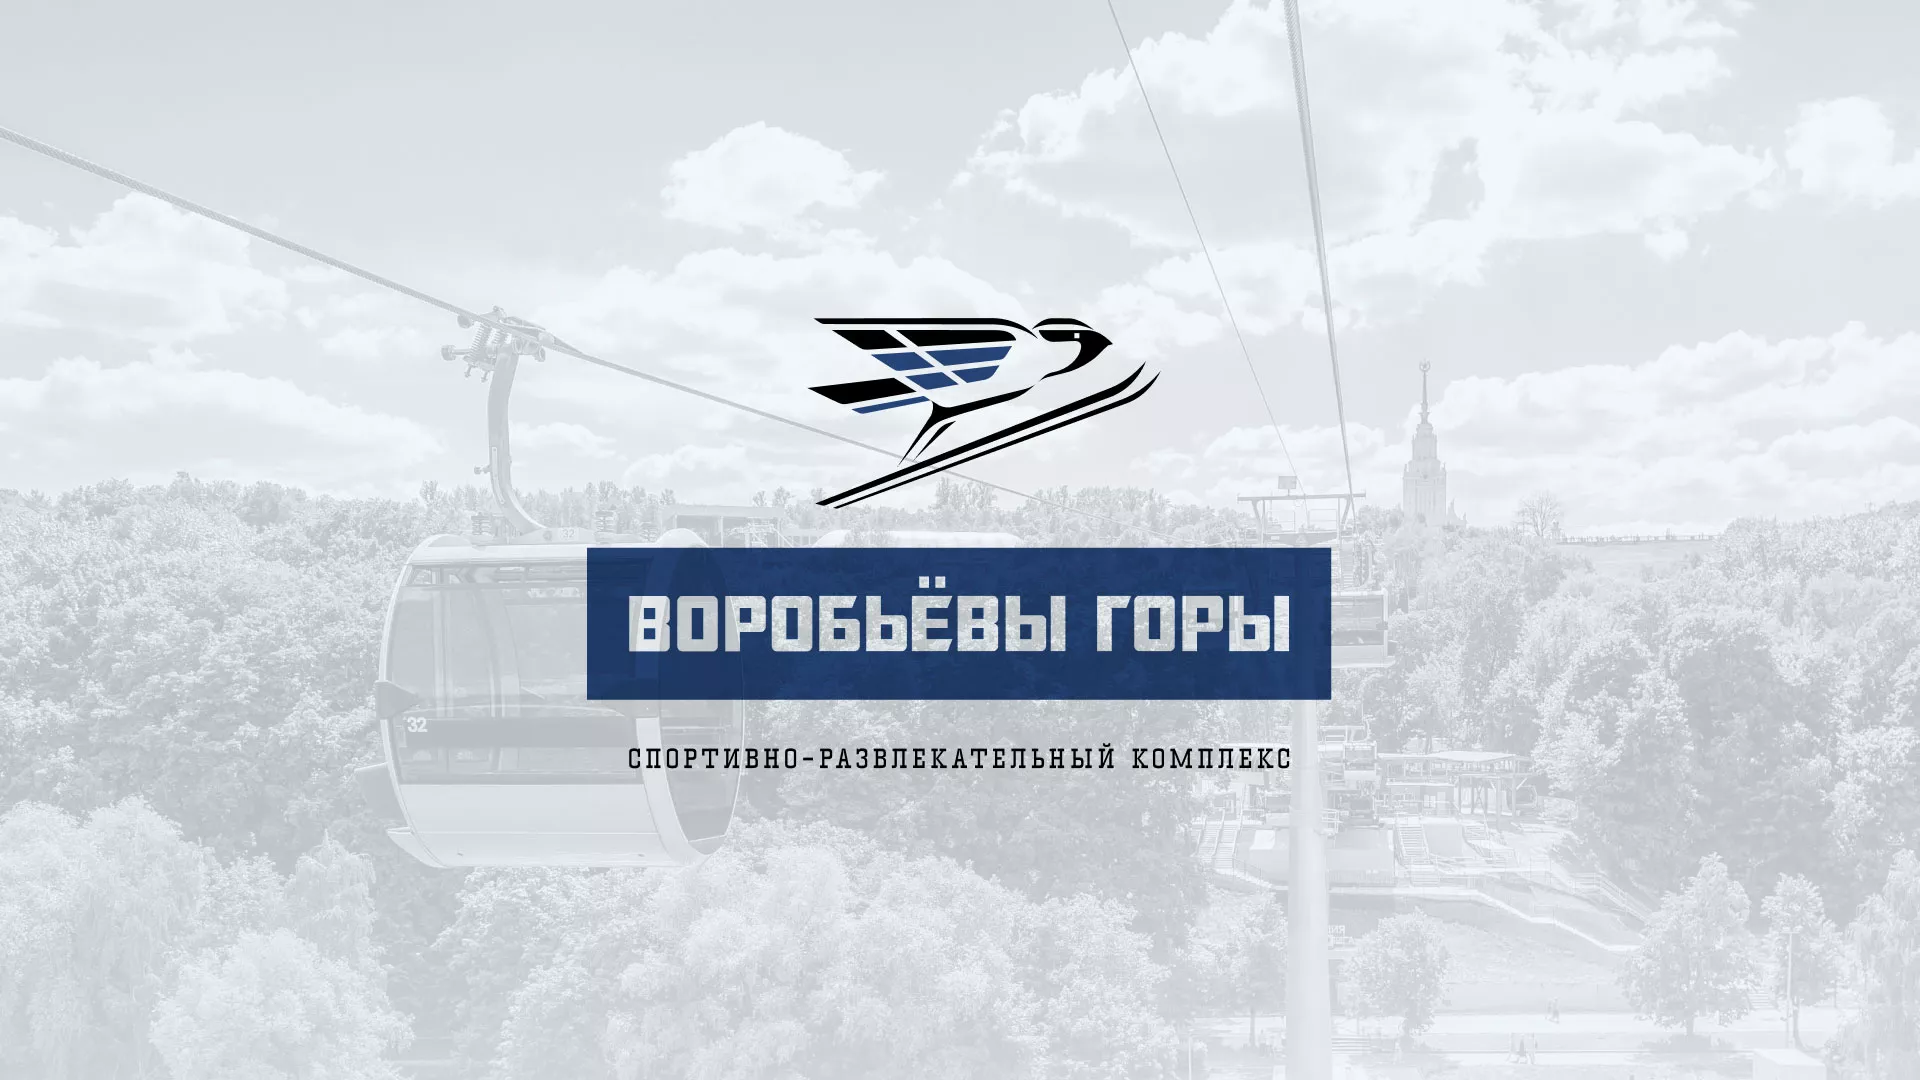 Разработка сайта в Сочи для спортивно-развлекательного комплекса «Воробьёвы горы»